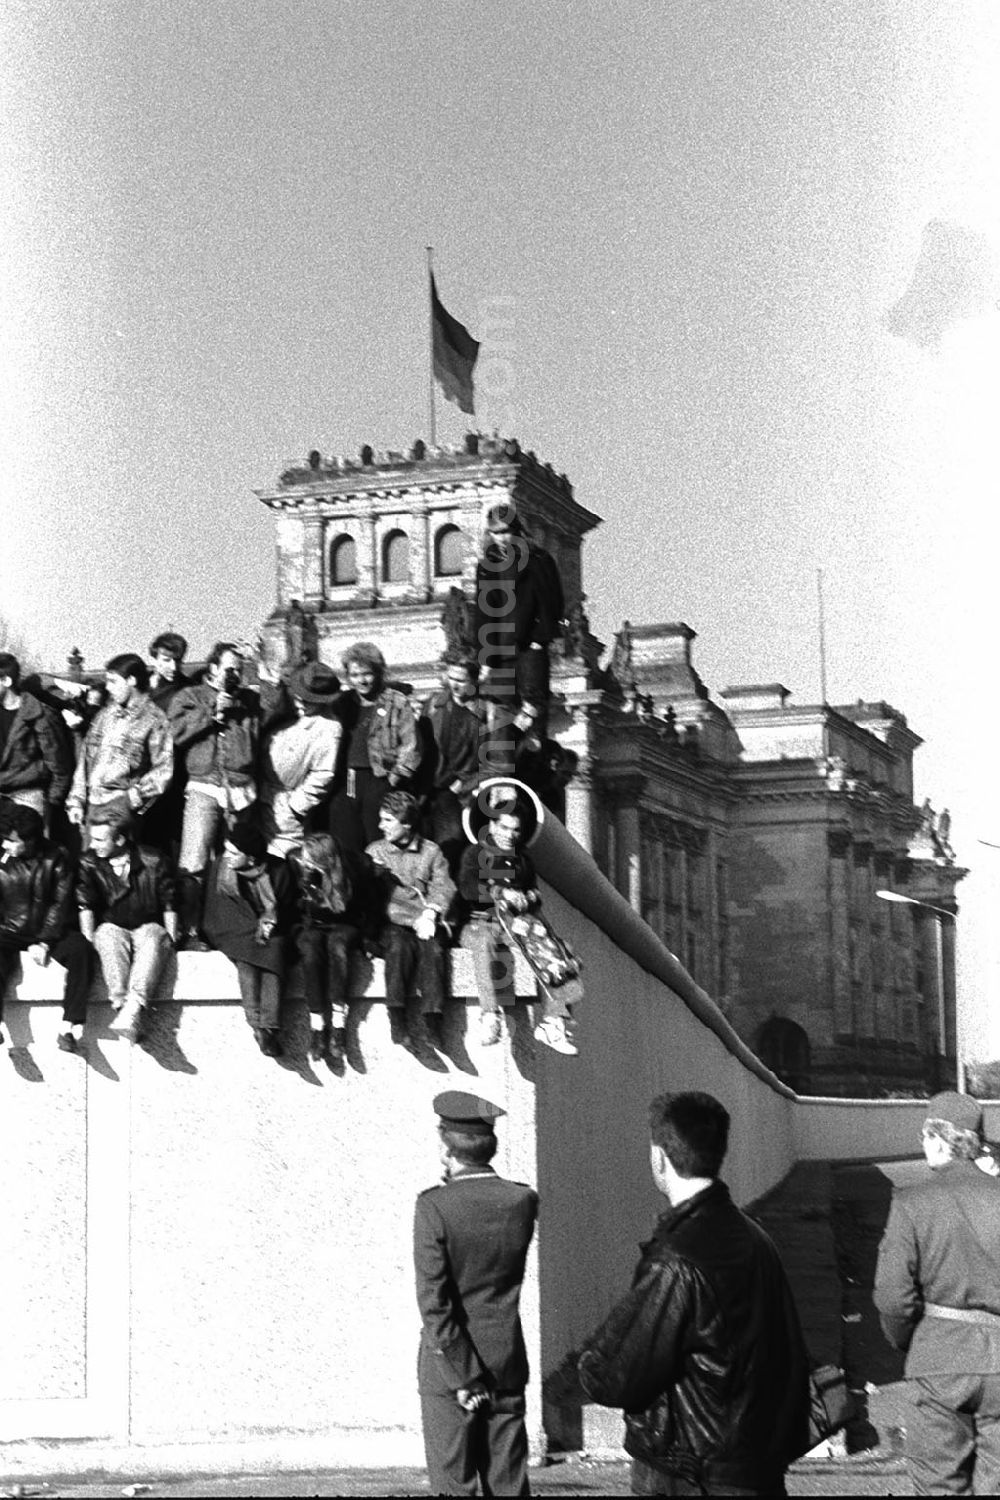 GDR picture archive: Berlin - Soldaten der DDR stehen vor der Berliner-Mauer am Brandenburger Tor, auf der Mauer sitzen und stehen Menschen. Im Hintergrund der Reichstag.